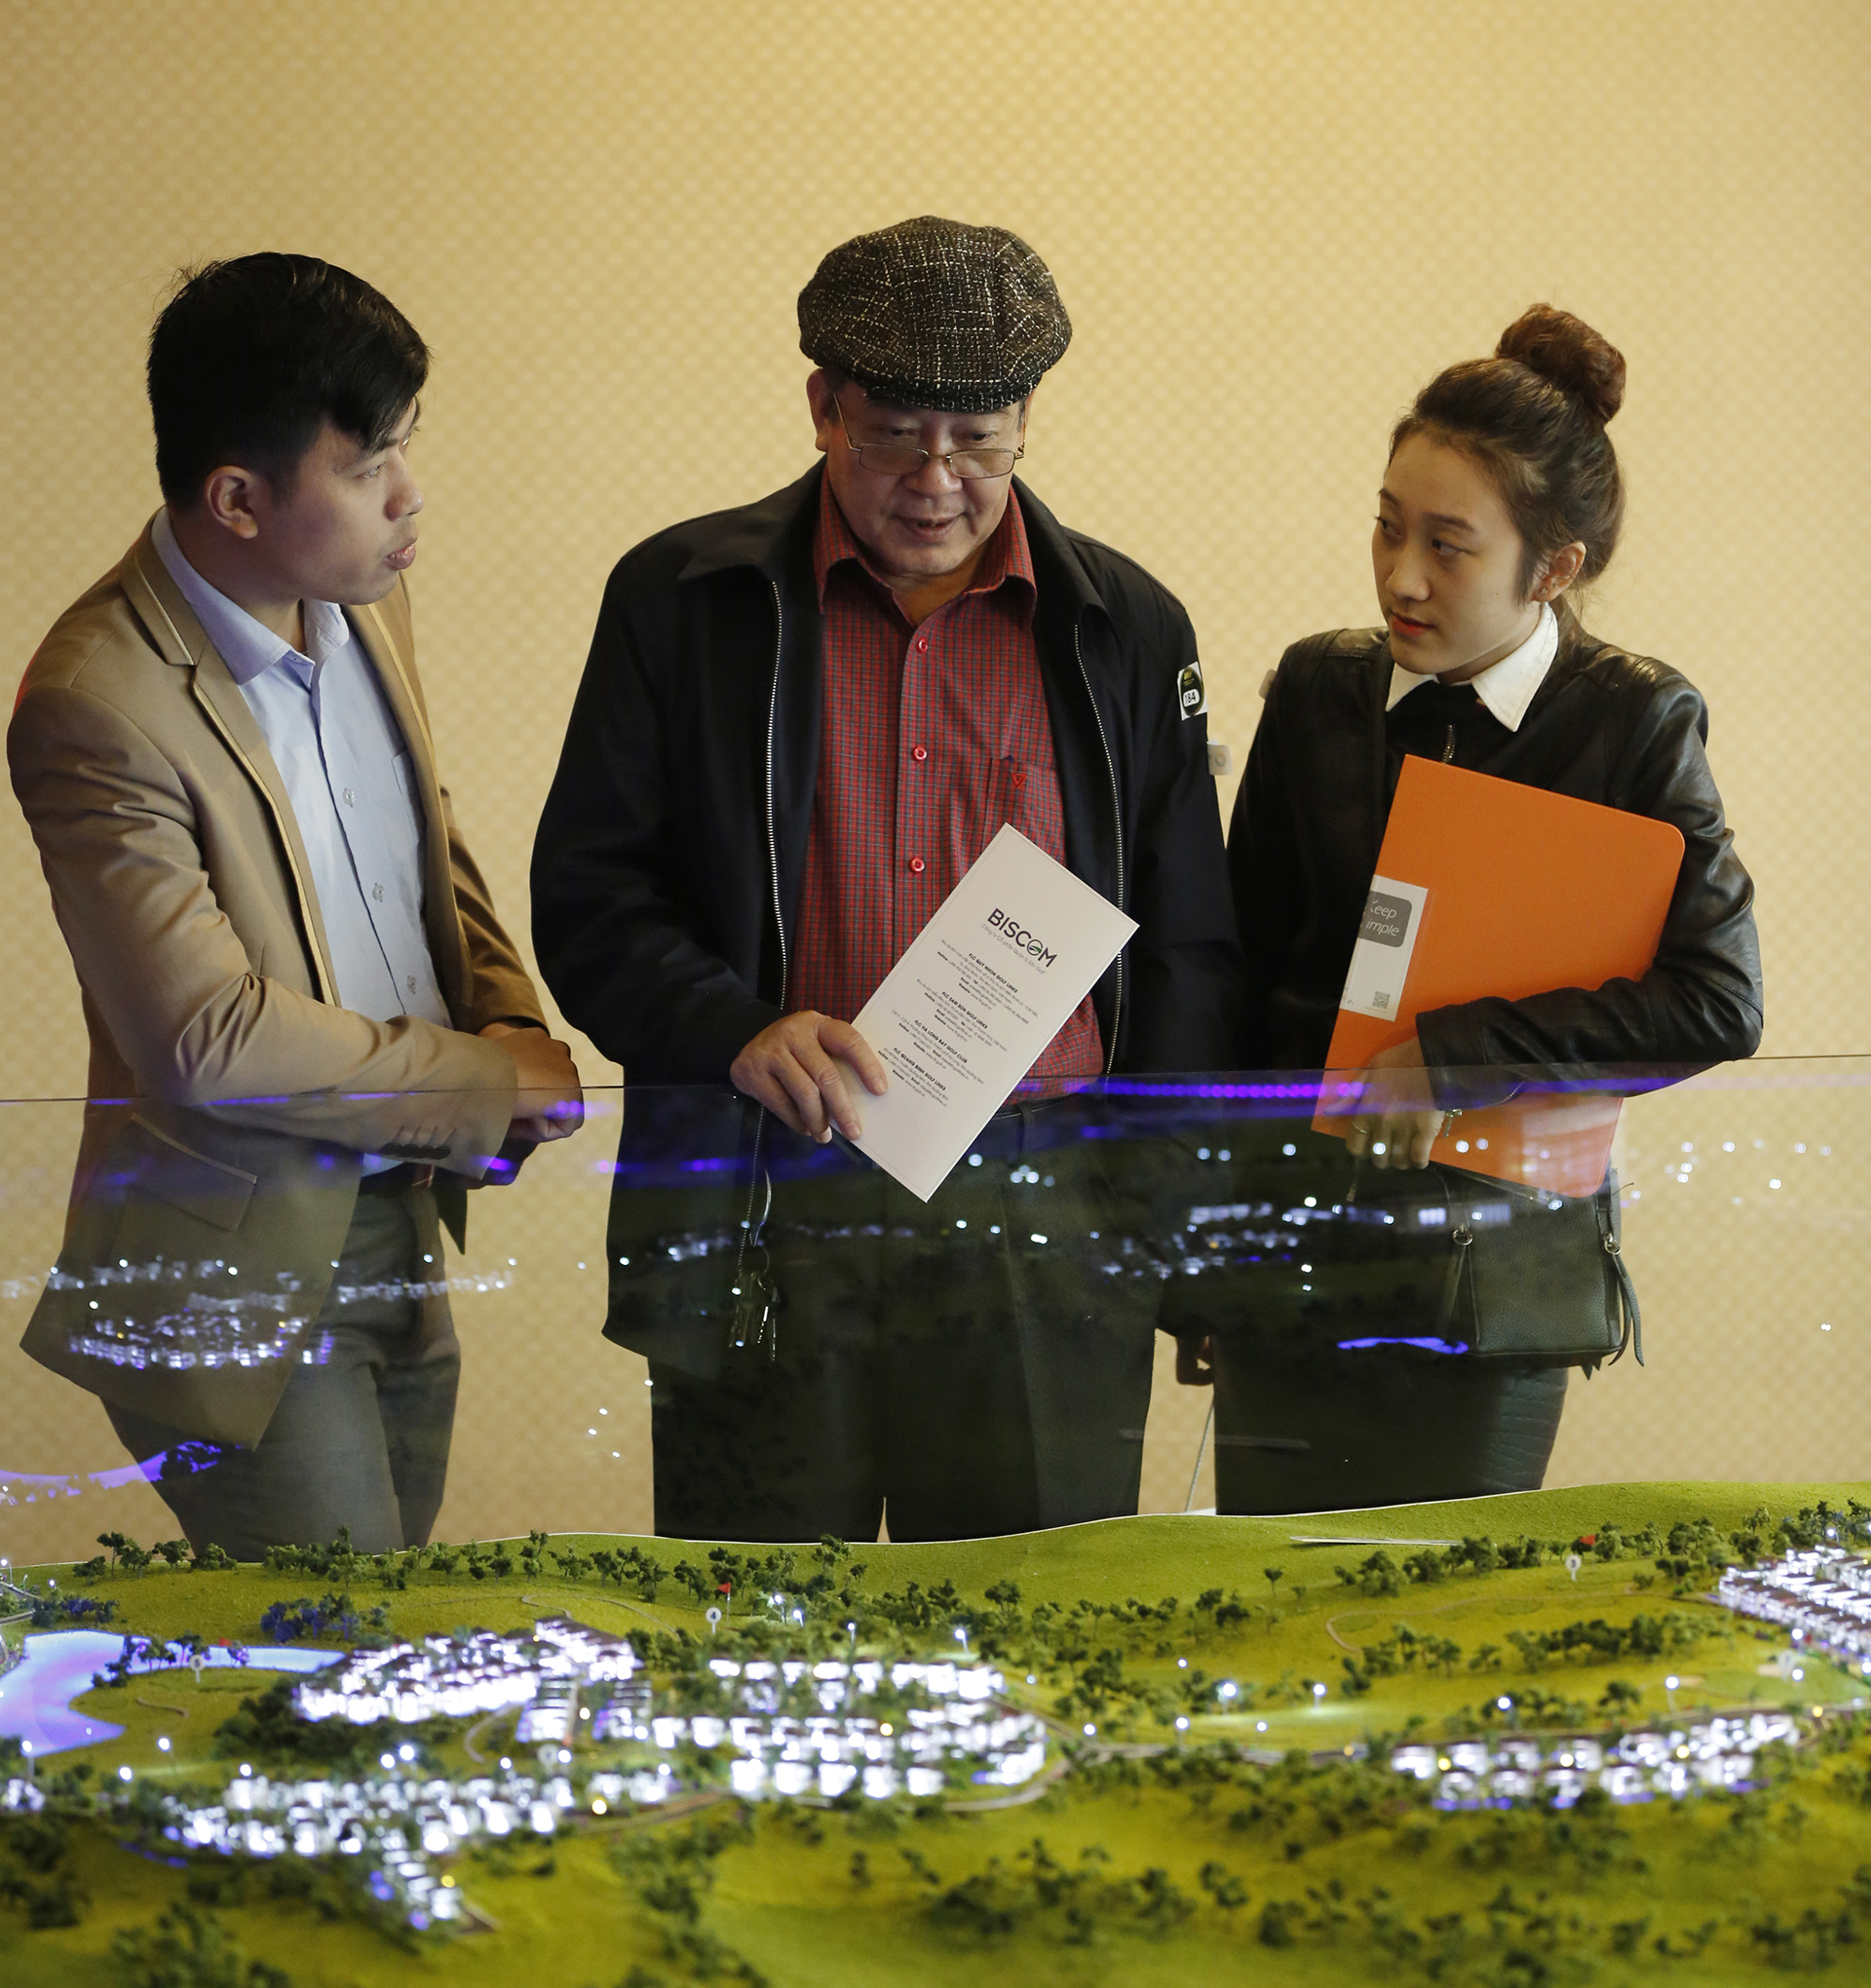  Dự án nhận được rất nhiều sự quan tâm từ khách hàng và nhà đầu tư Quảng Ninh